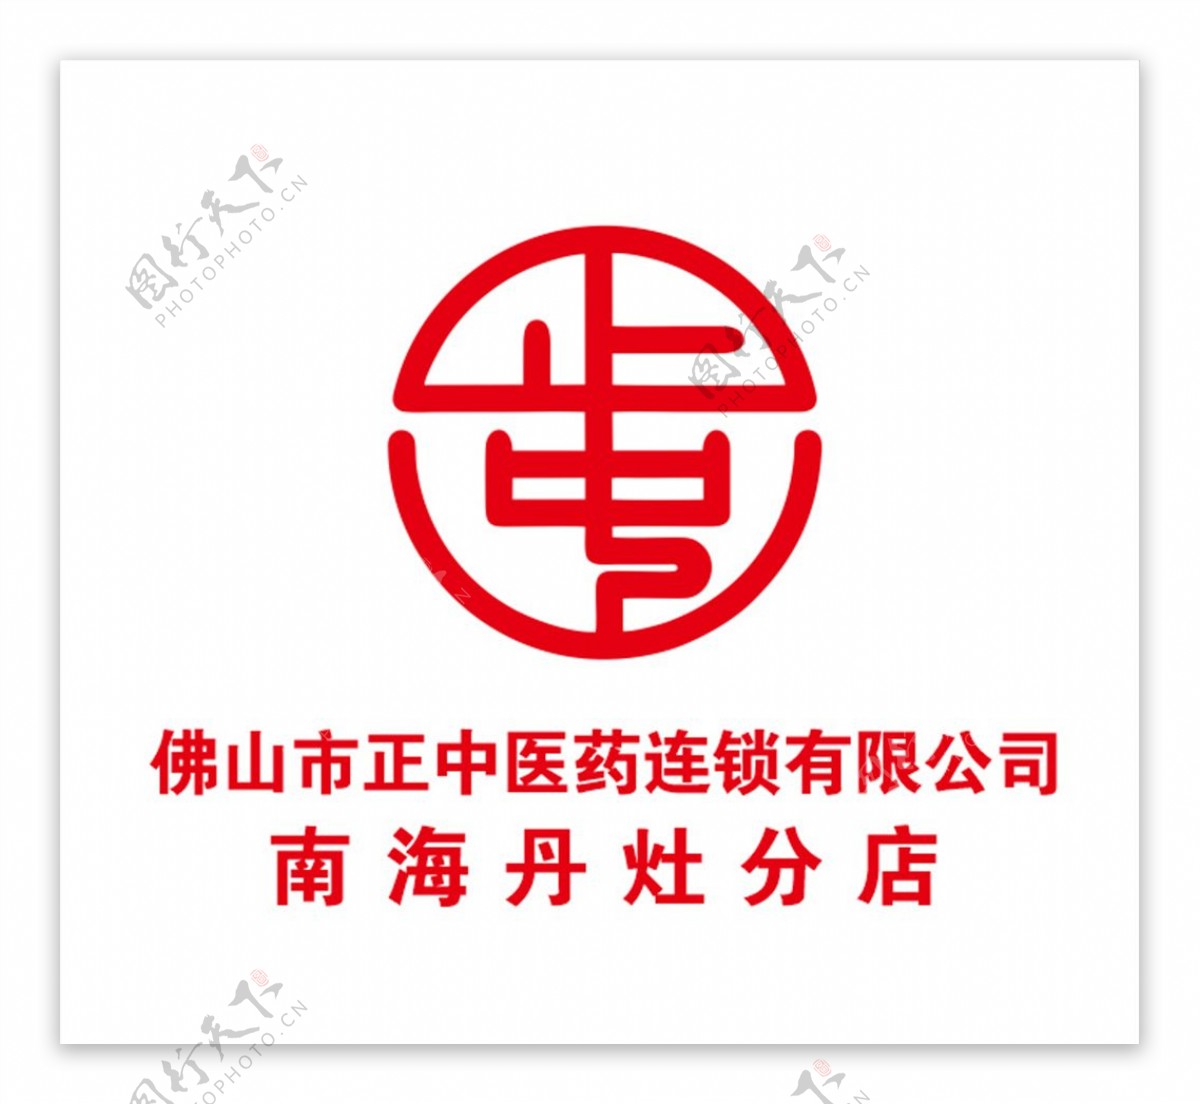 正中医药logo图片